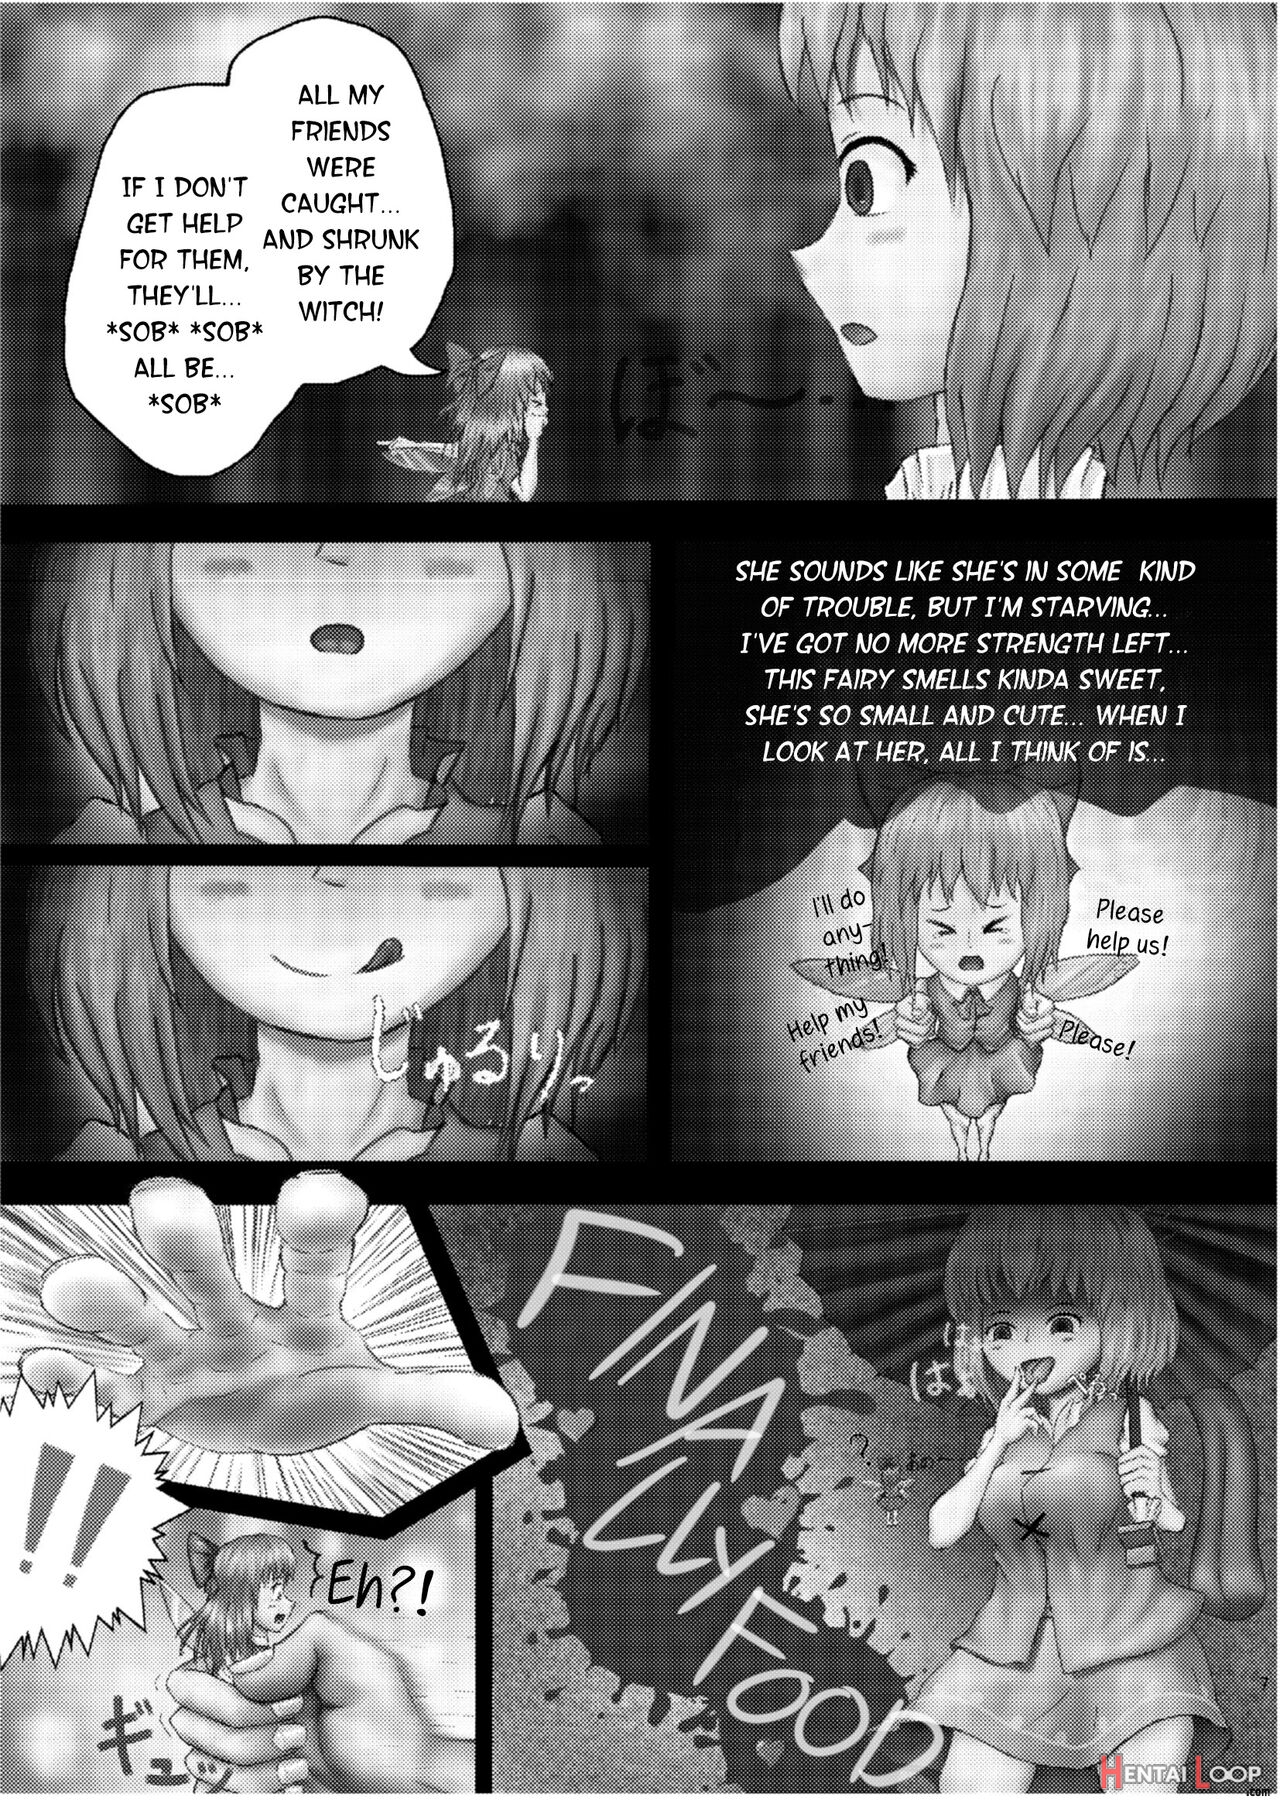 Kounai-ishouka Manga page 3